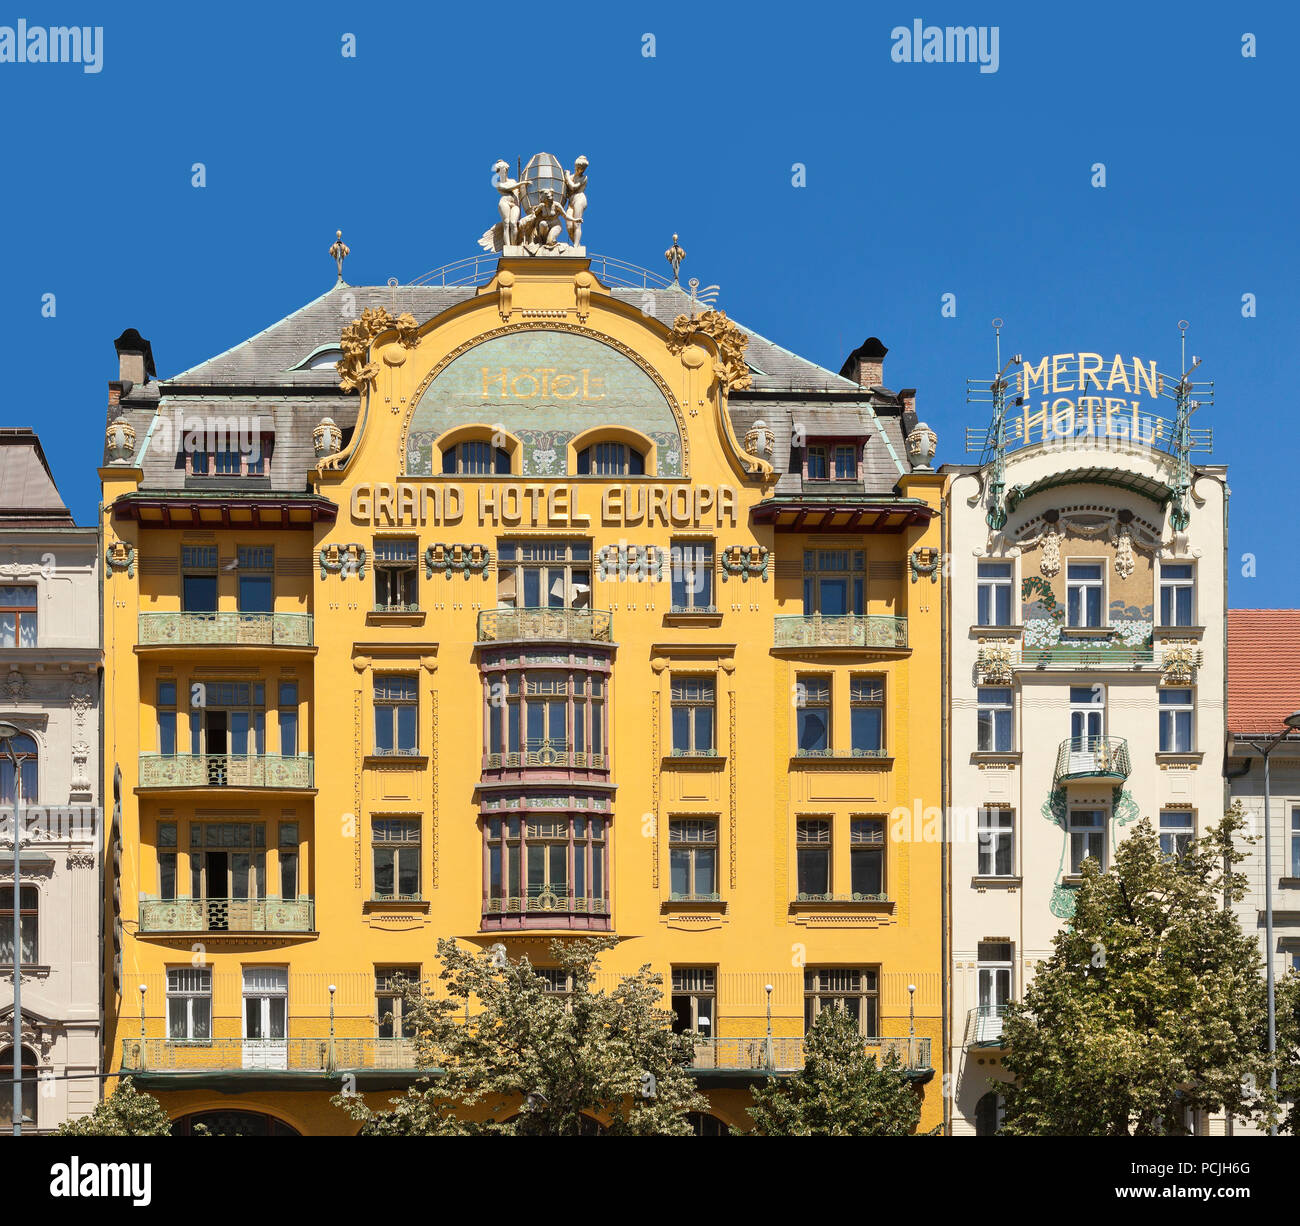 Grand Hotel Europa, façade de l'hôtel Meran, Wenceslas Square, Prague, République Tchèque Banque D'Images